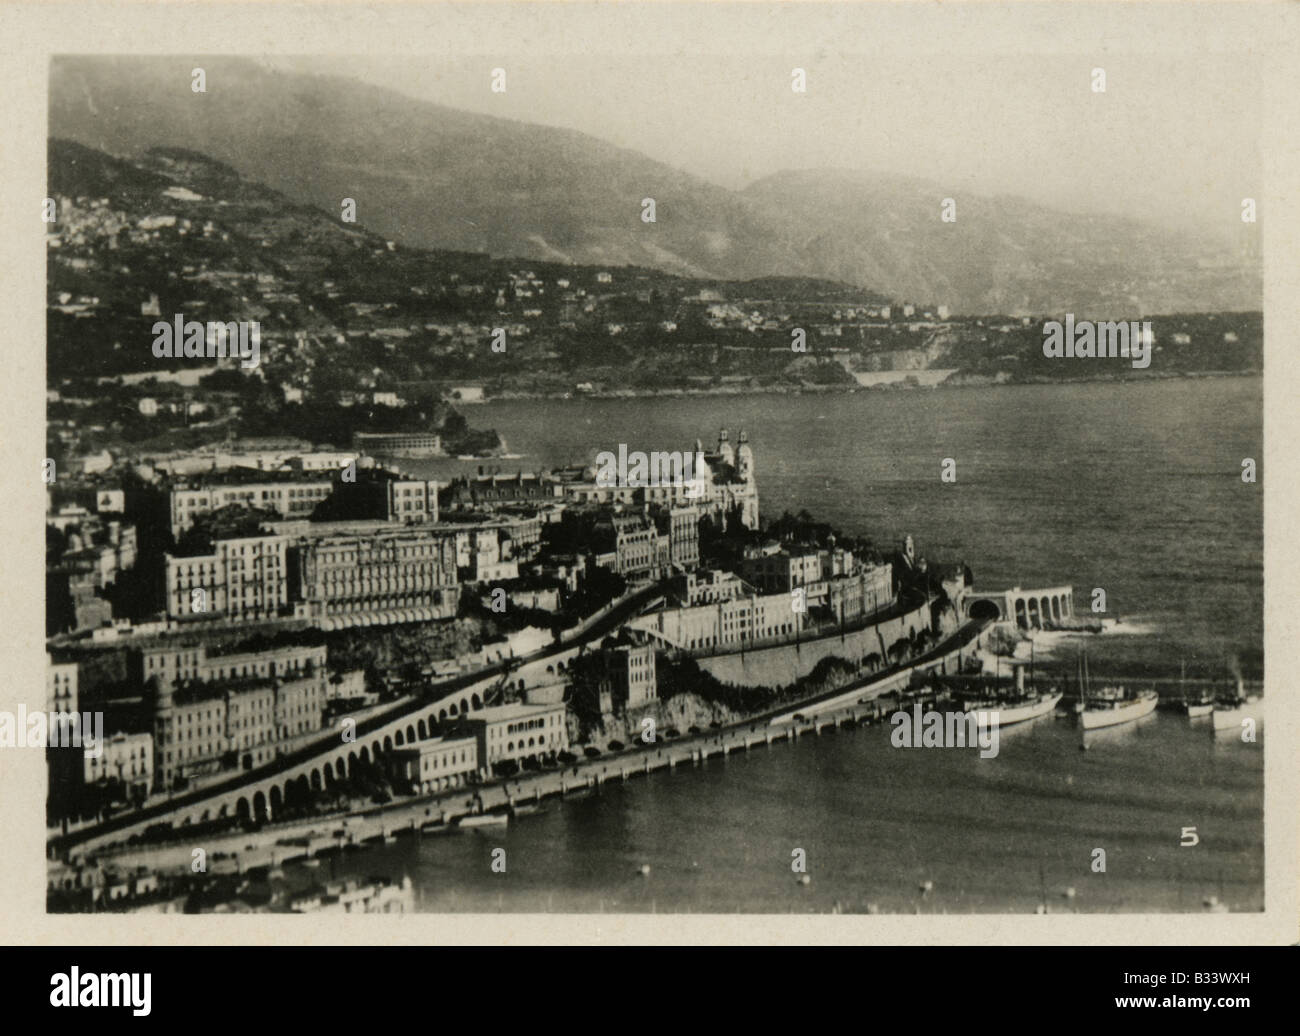 Monte Carlo, Monaco circa 1920 Stock Photo - Alamy